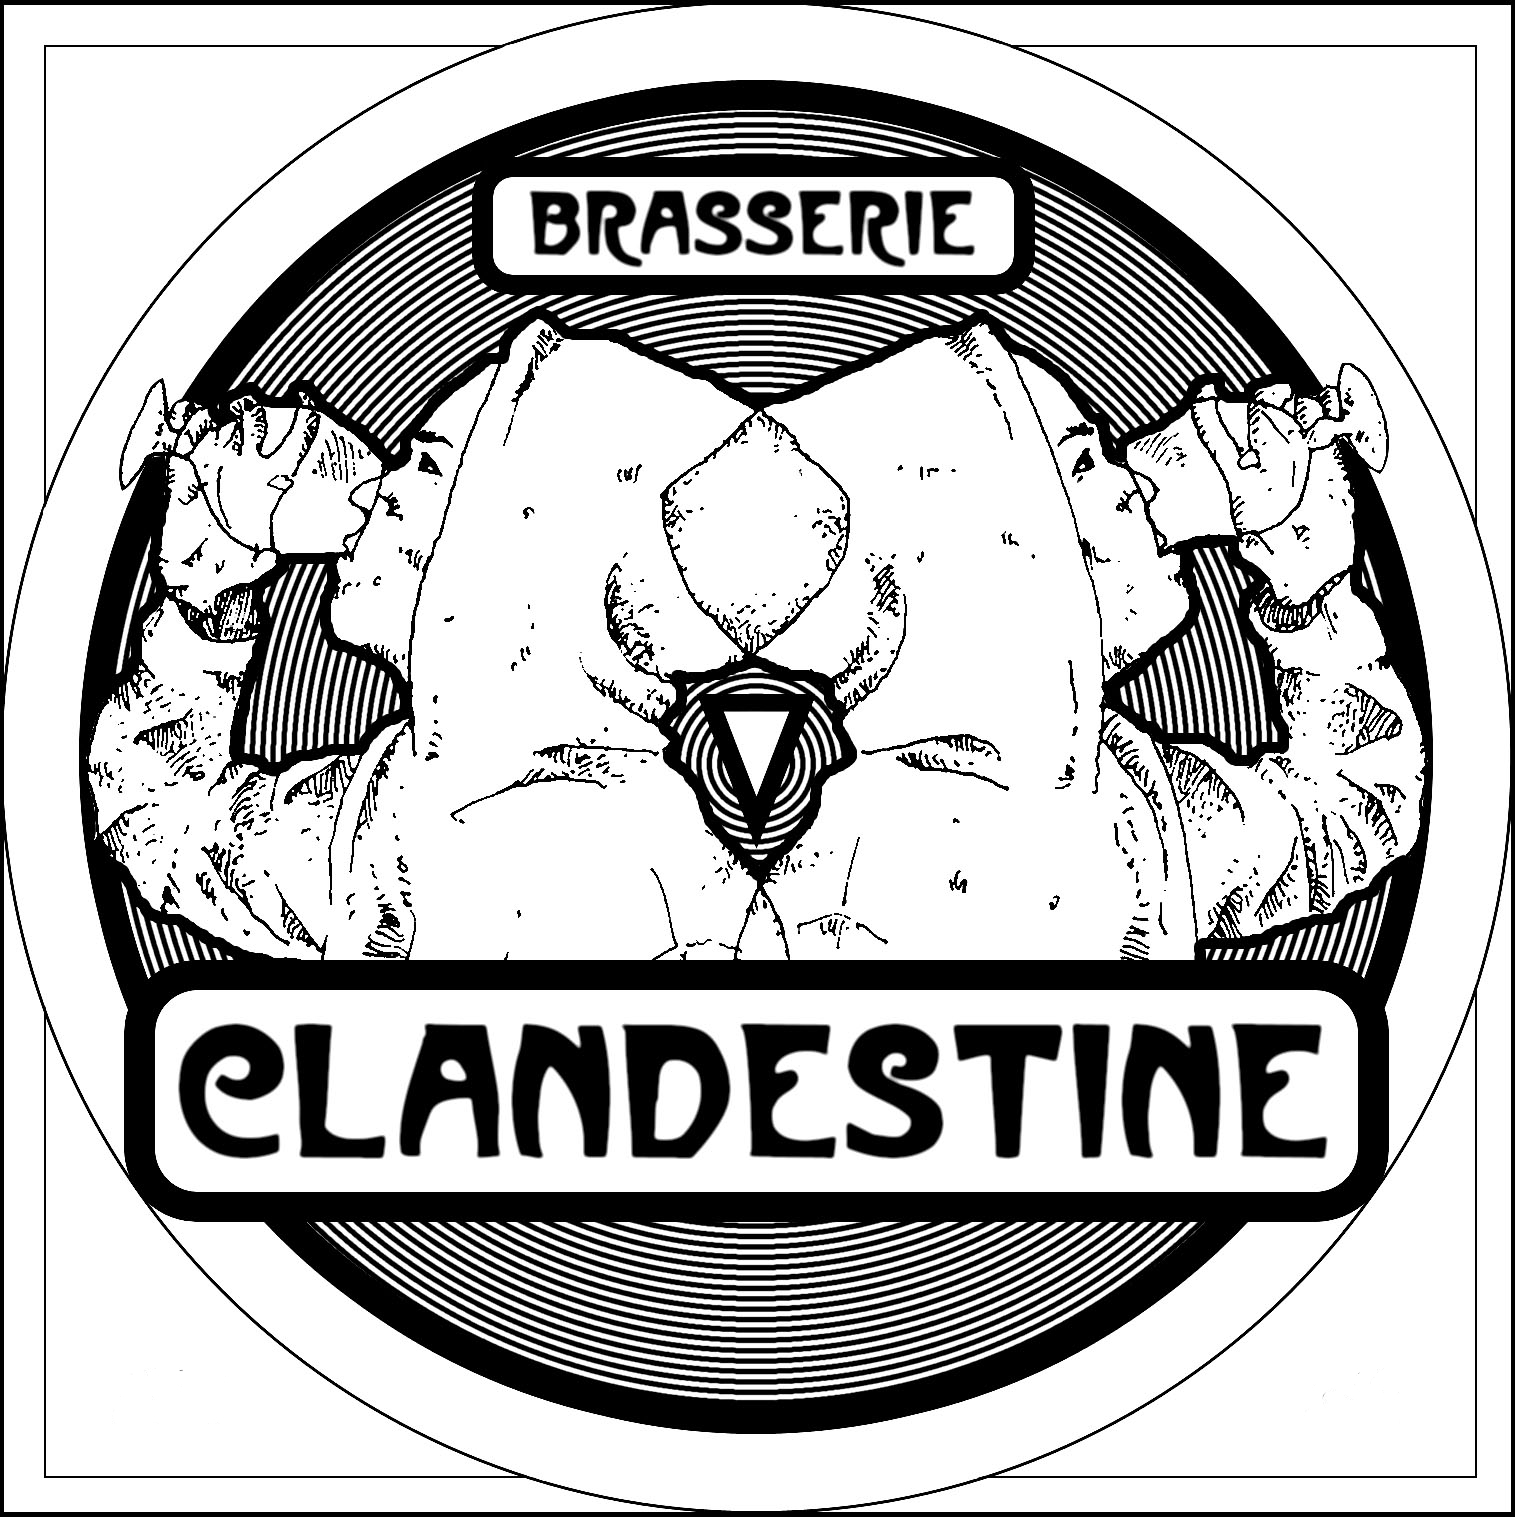 Brasserie La Clandestine